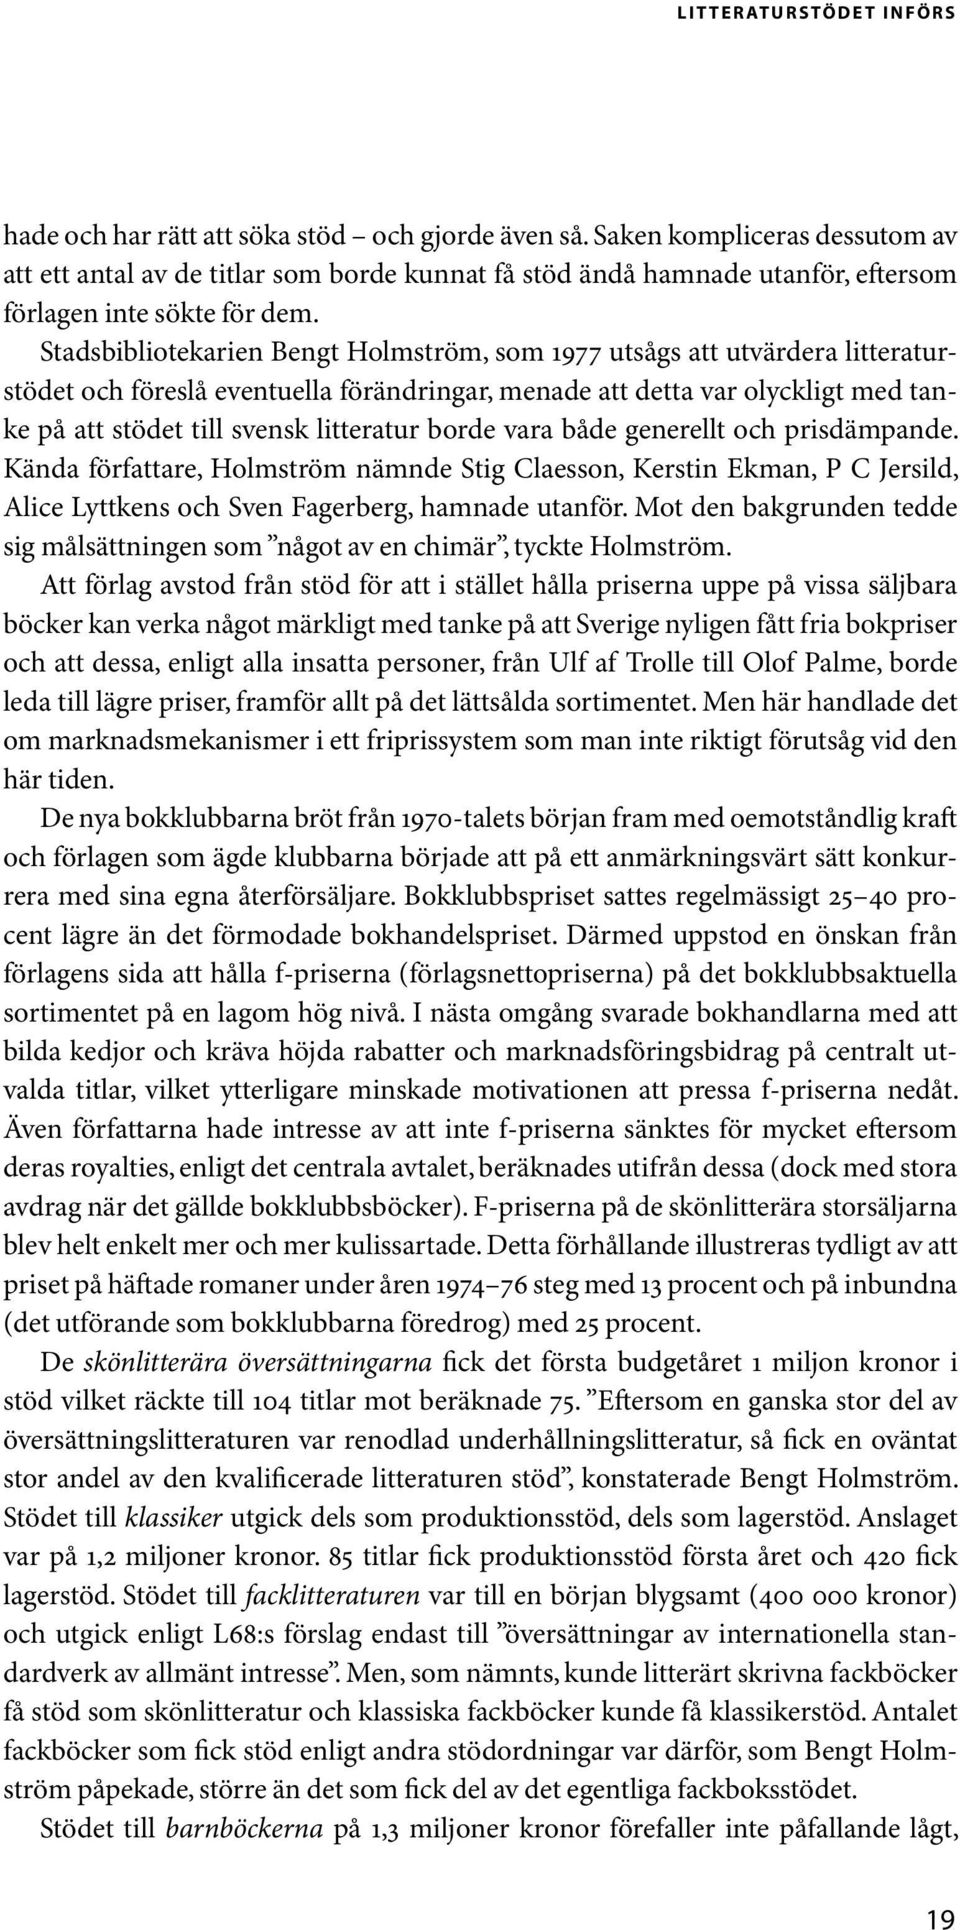 Stadsbibliotekarien Bengt Holmström, som 1977 utsågs att utvärdera litteraturstödet och föreslå eventuella förändringar, menade att detta var olyckligt med tanke på att stödet till svensk litteratur